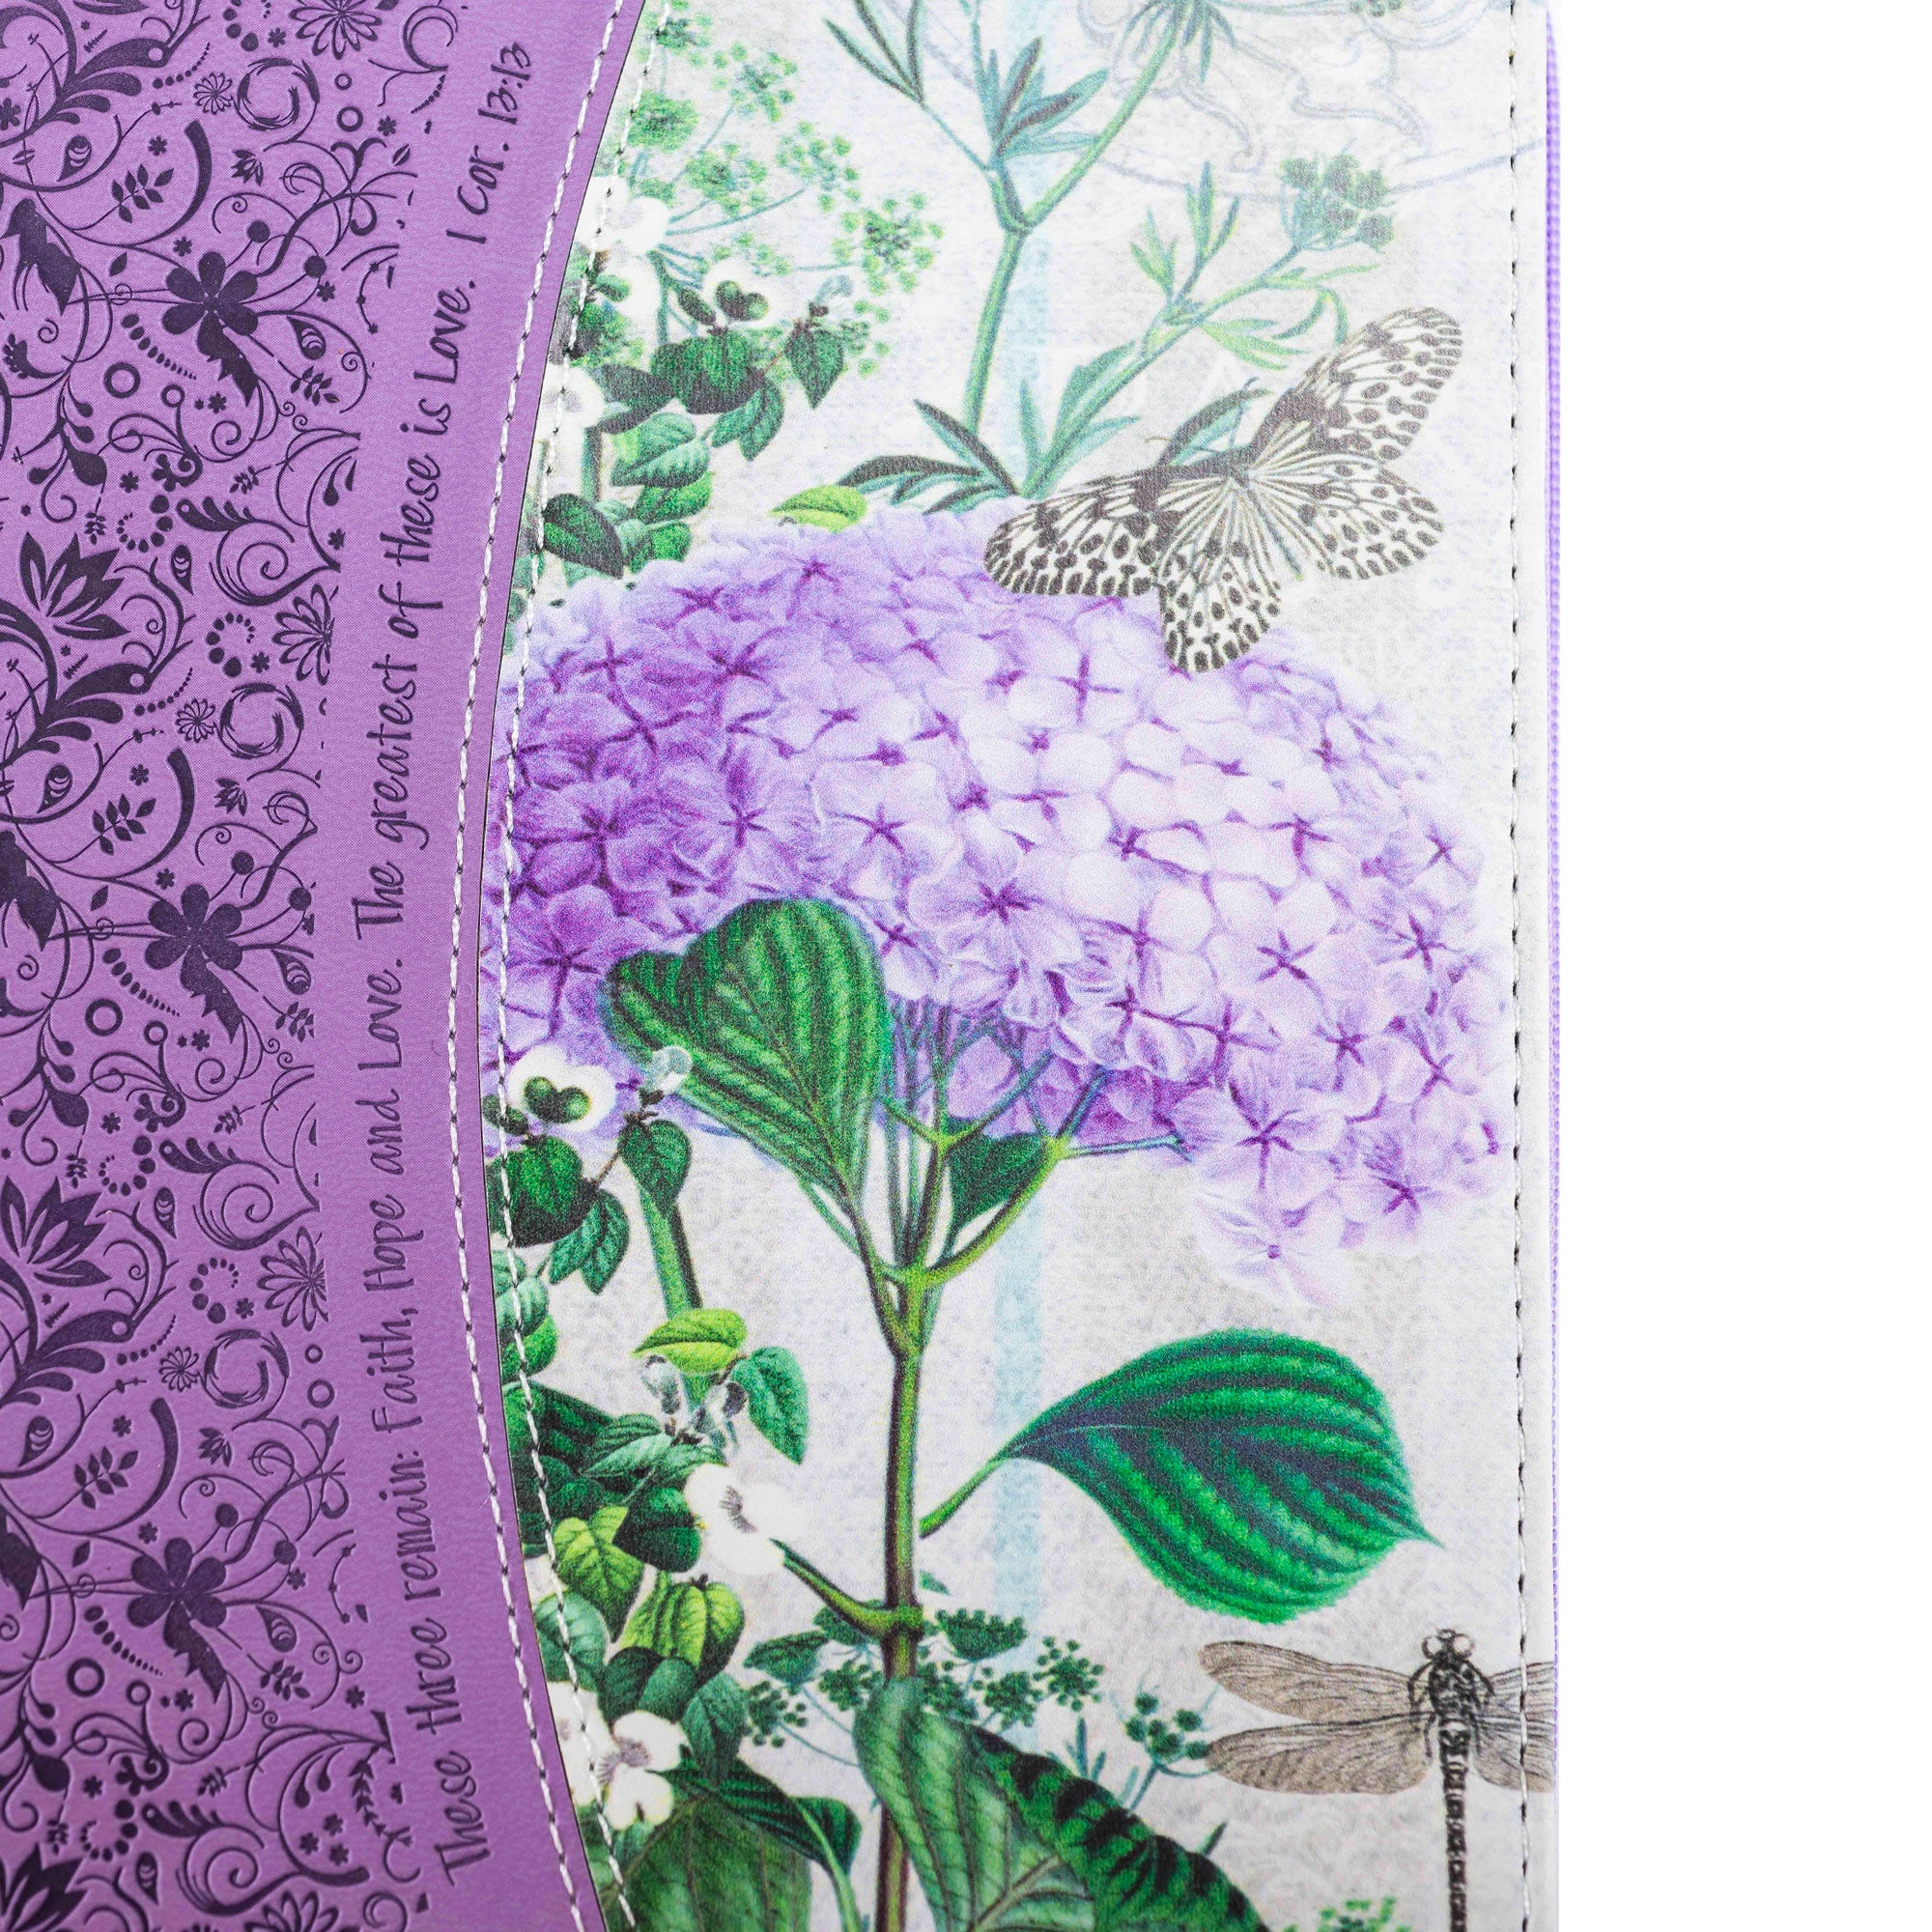 Divine Details: Purple Hydrangea Journal